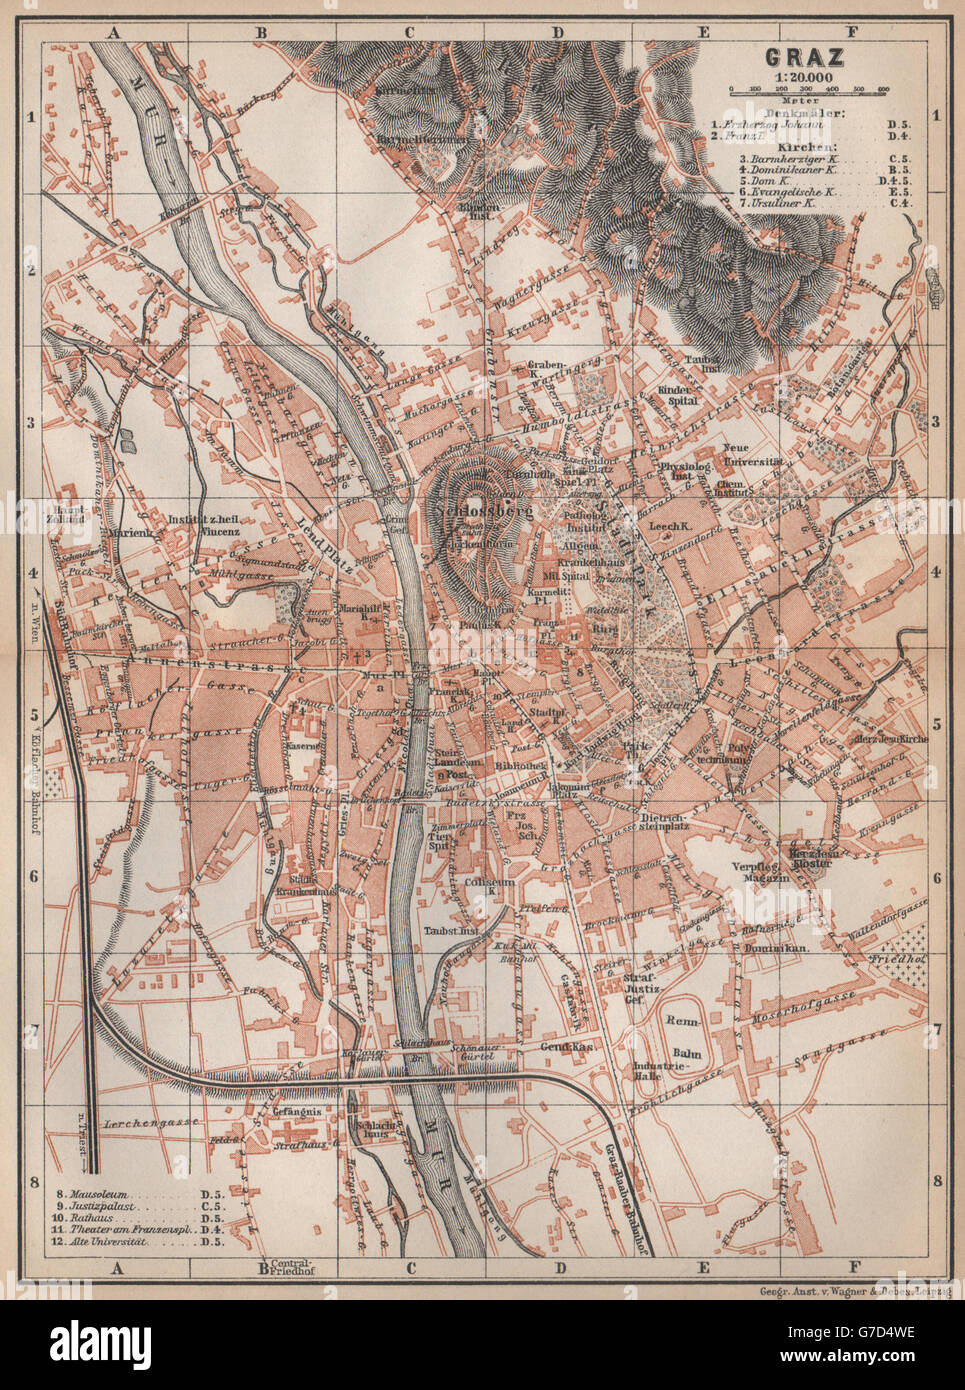 GRAZ (GRATZ) Stadt Stadt Plan attraktivem. Österreich-Österreich Karte, 1896 alte Karte Stockfoto